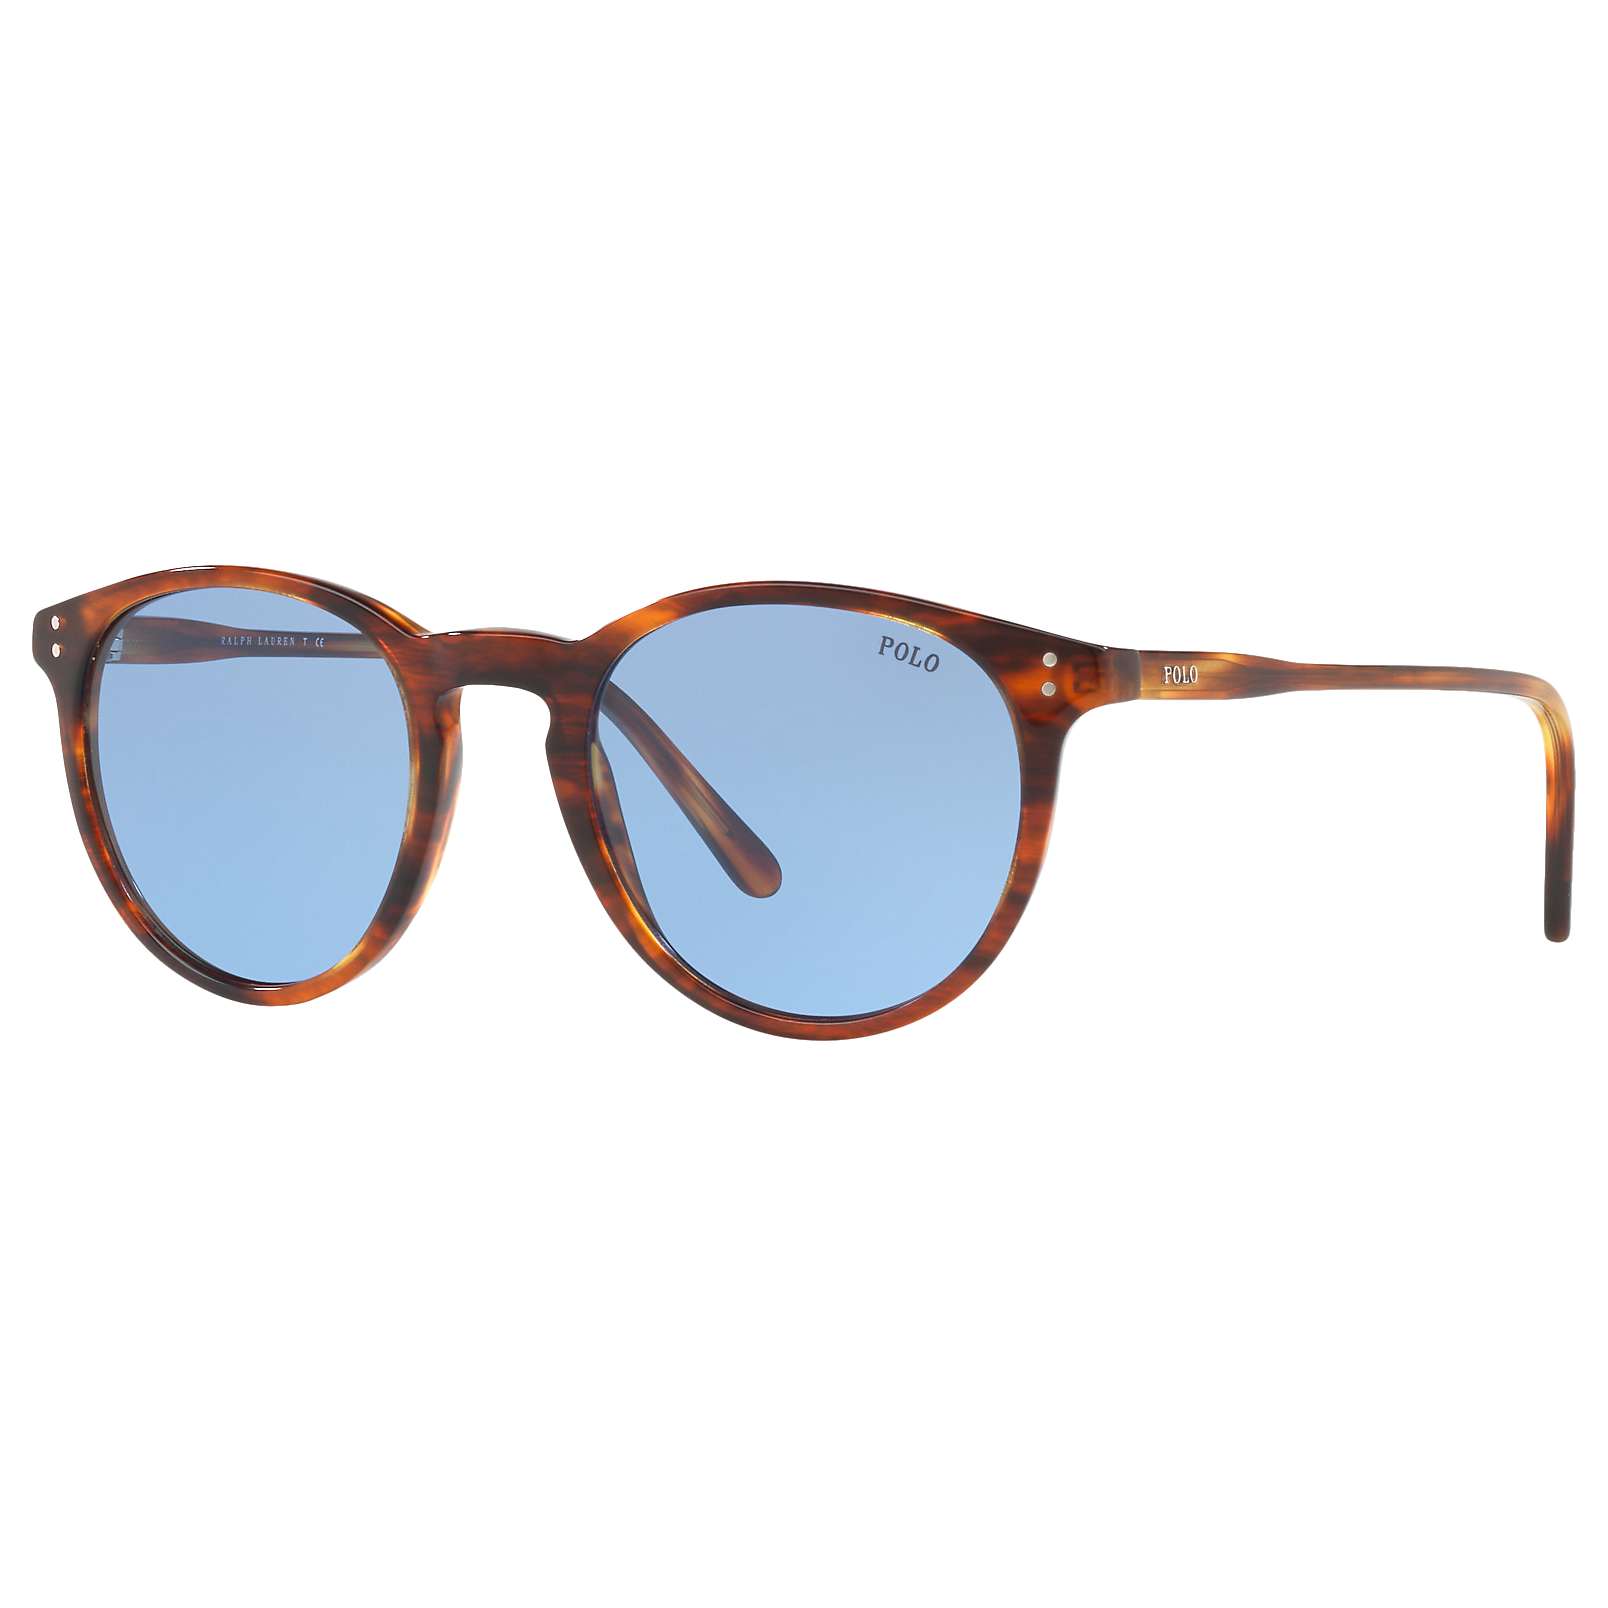 Polo Ralph Lauren Eyeglasses for Men Mens Sunglasses Polo Ralph Lauren Sunglasses 